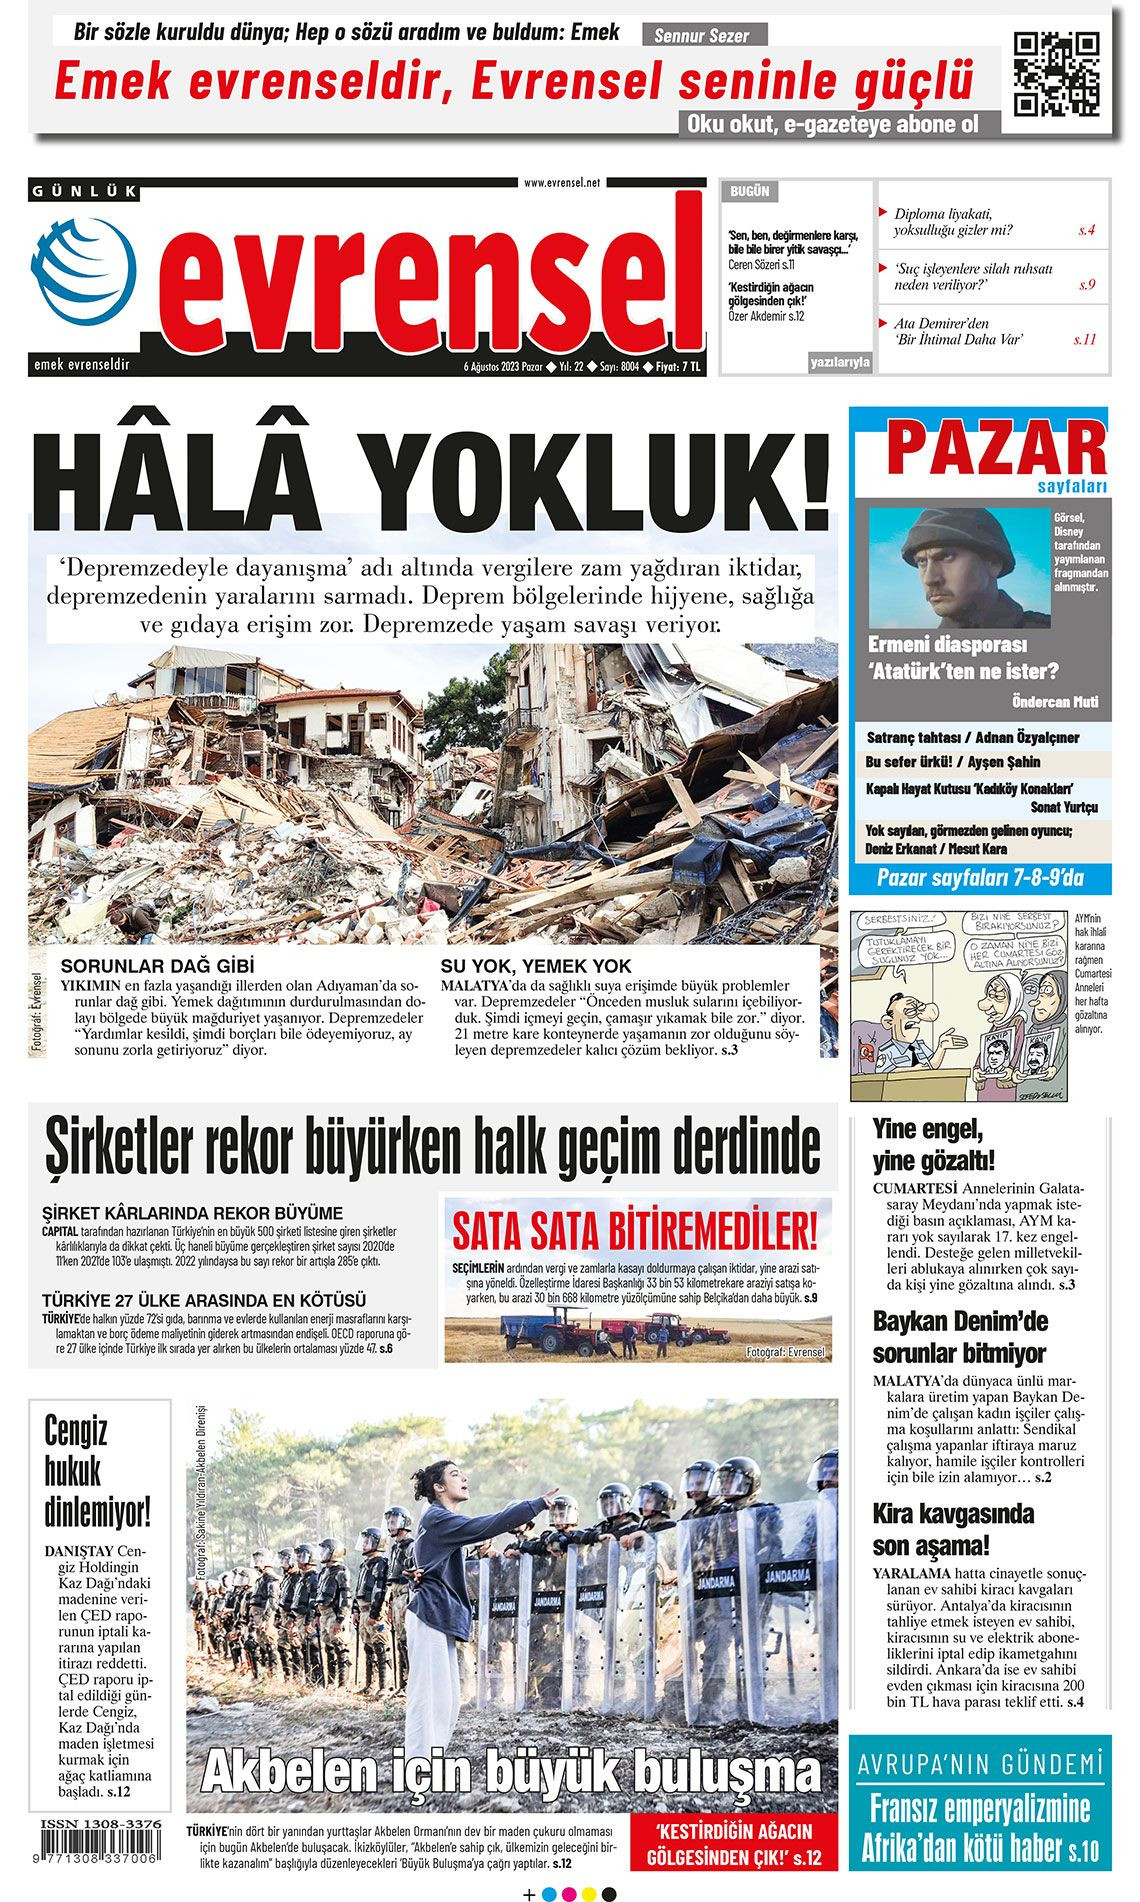 Günün manşetleri: 'İstanbul'daki Akbelen' - Sayfa 1